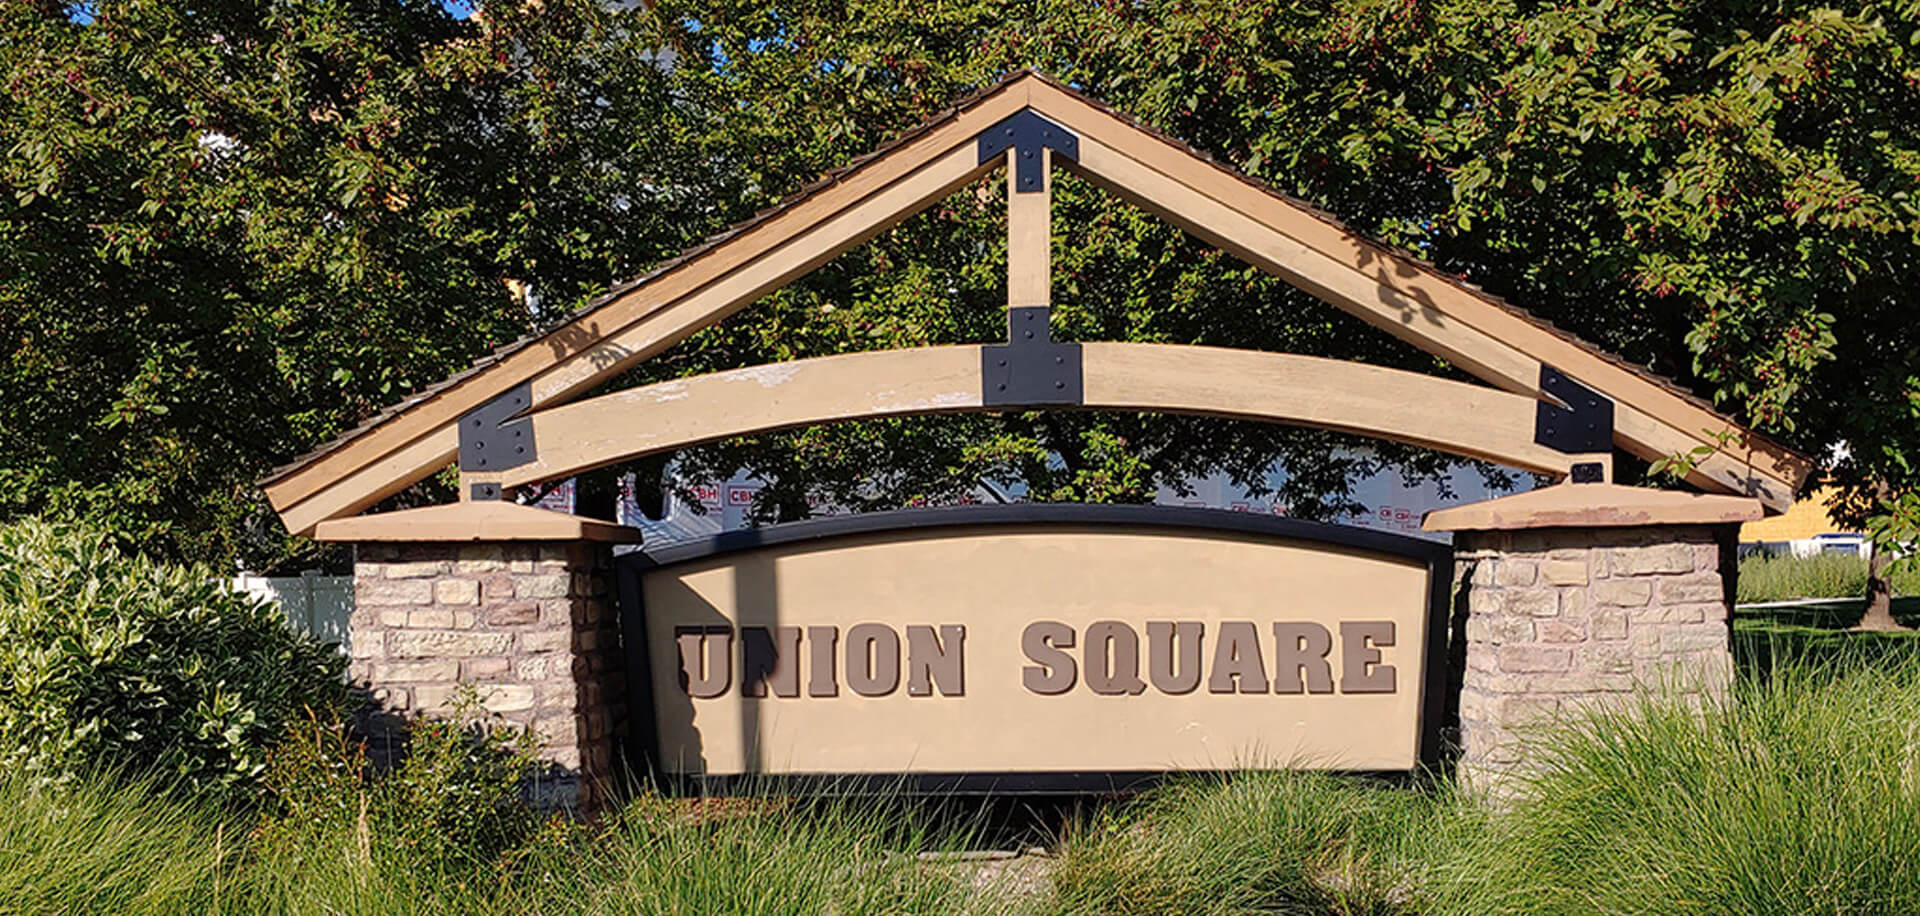 Union Square Subdivision